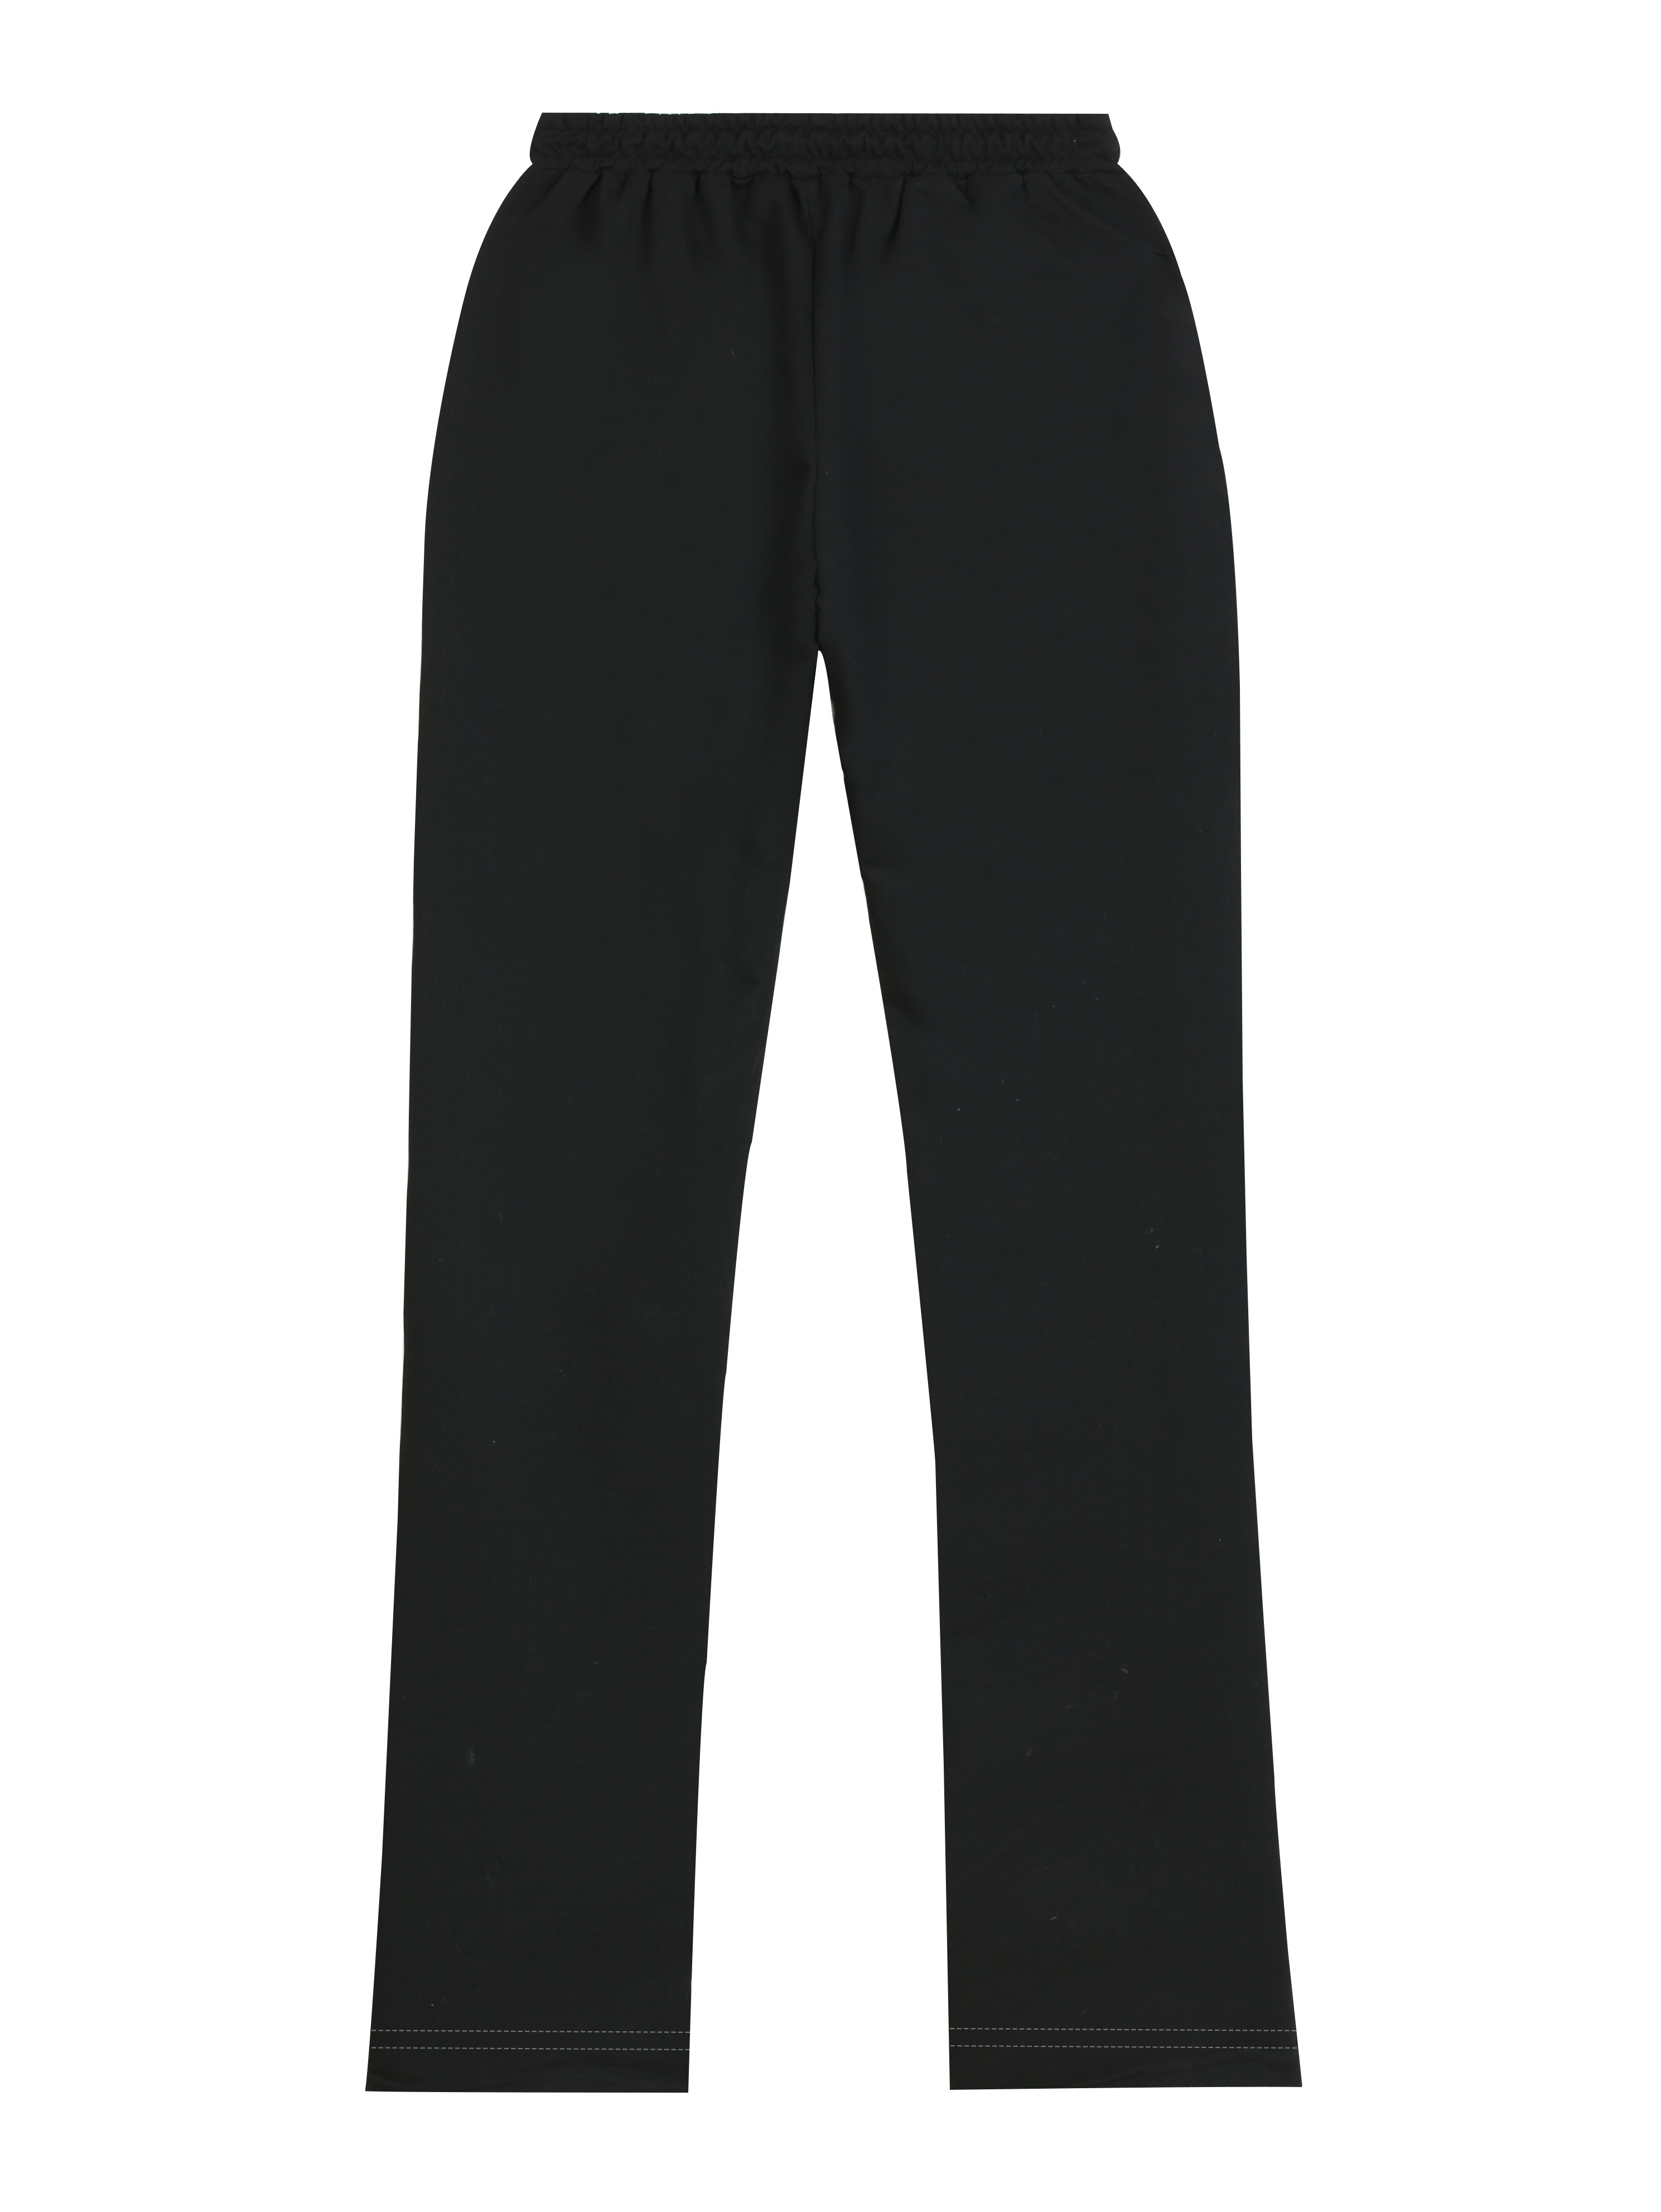 VSSSJ Men New Mesh Sweatpants Plus Size Solid Color Drawstring Elastic  Waist Casual Pants Fashion Breathable Quick Dry Sport Long Pants Black M 